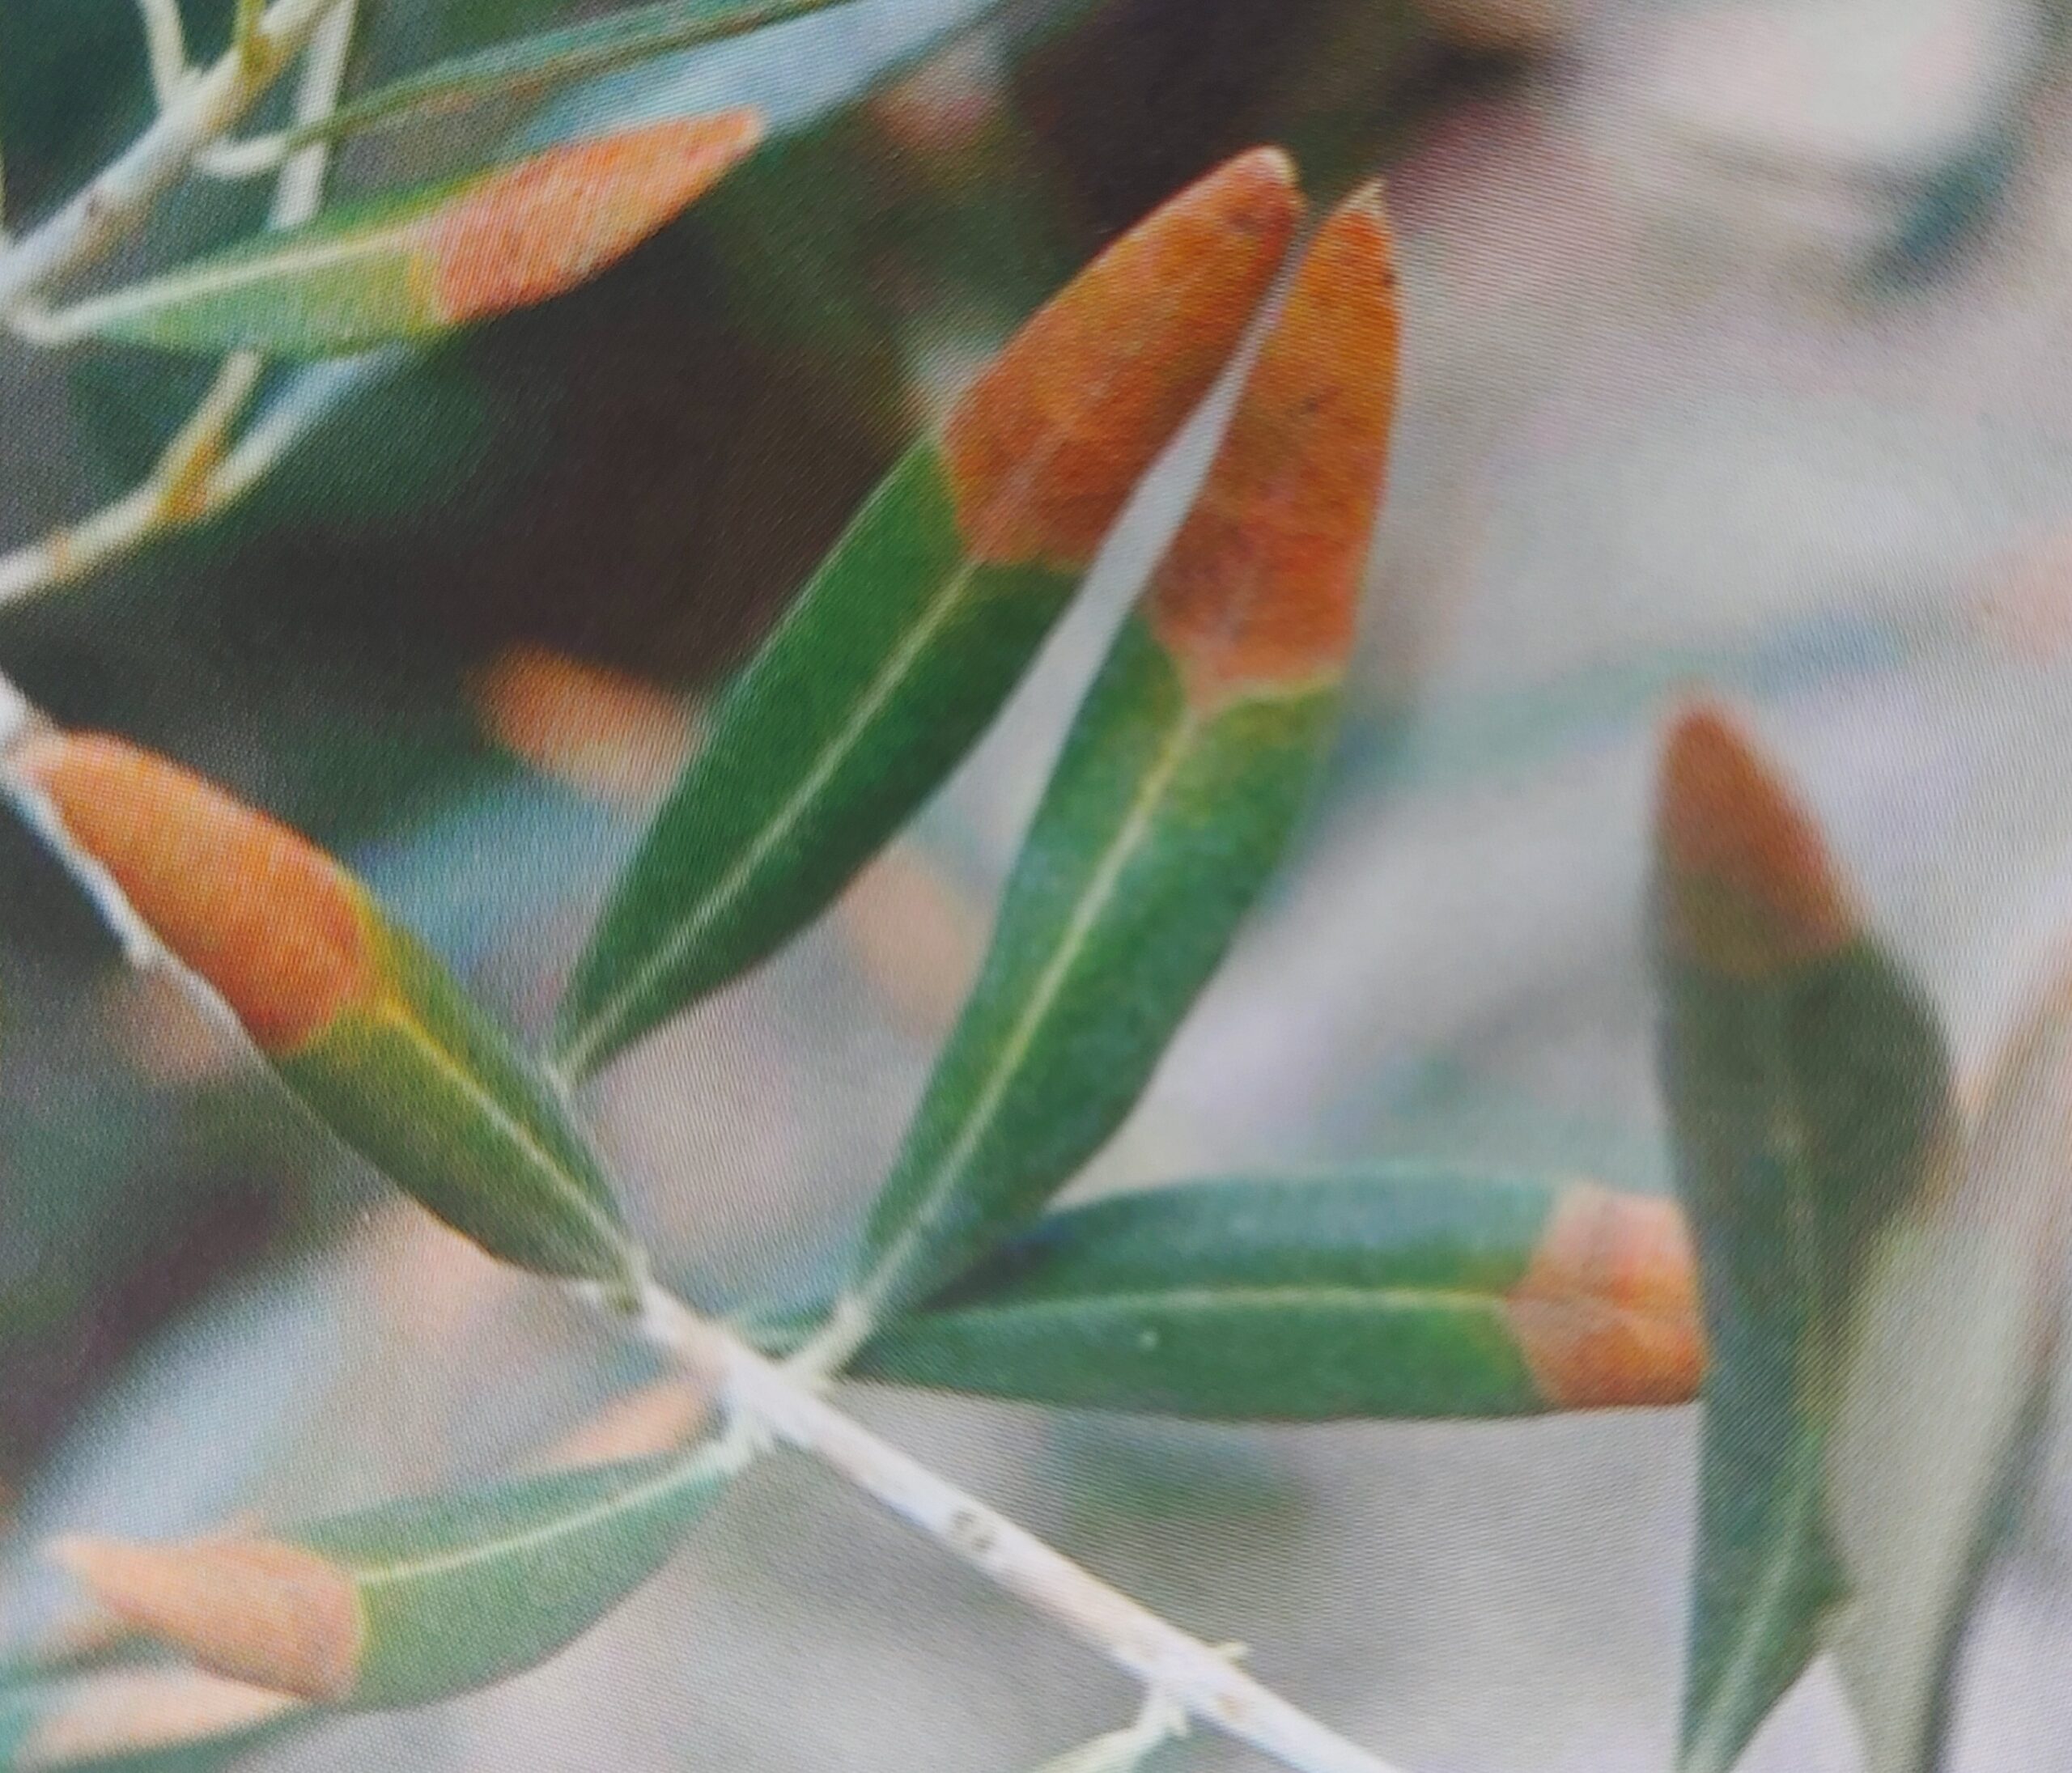 Hoja oliva con deficiencia de potasio